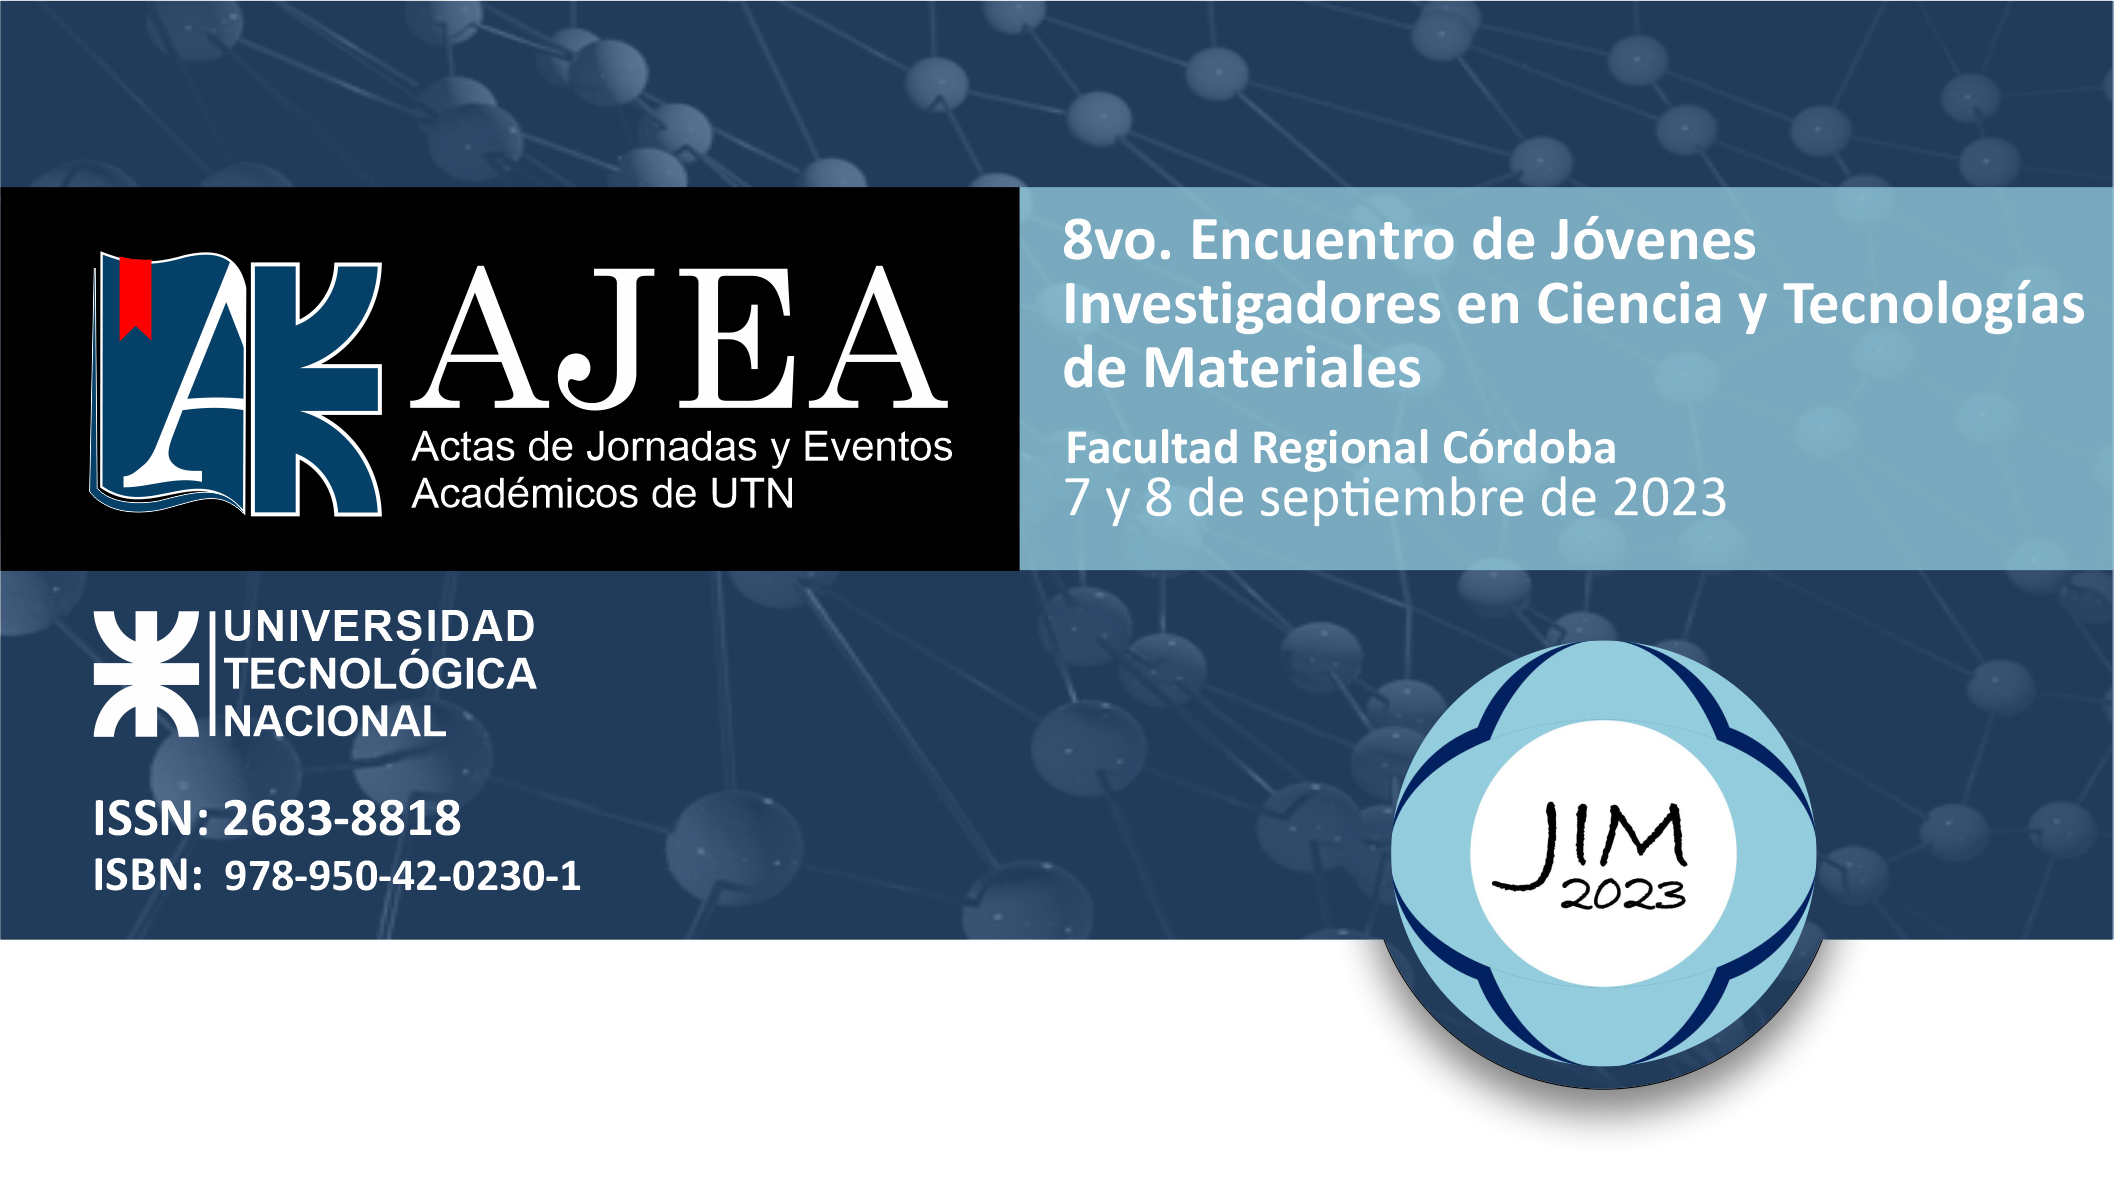                     Ver Núm. AJEA 25 (2023): 8vo. Encuentro de Jóvenes  Investigadores en Ciencia y Tecnologías  de Materiales - JIM 2023
                